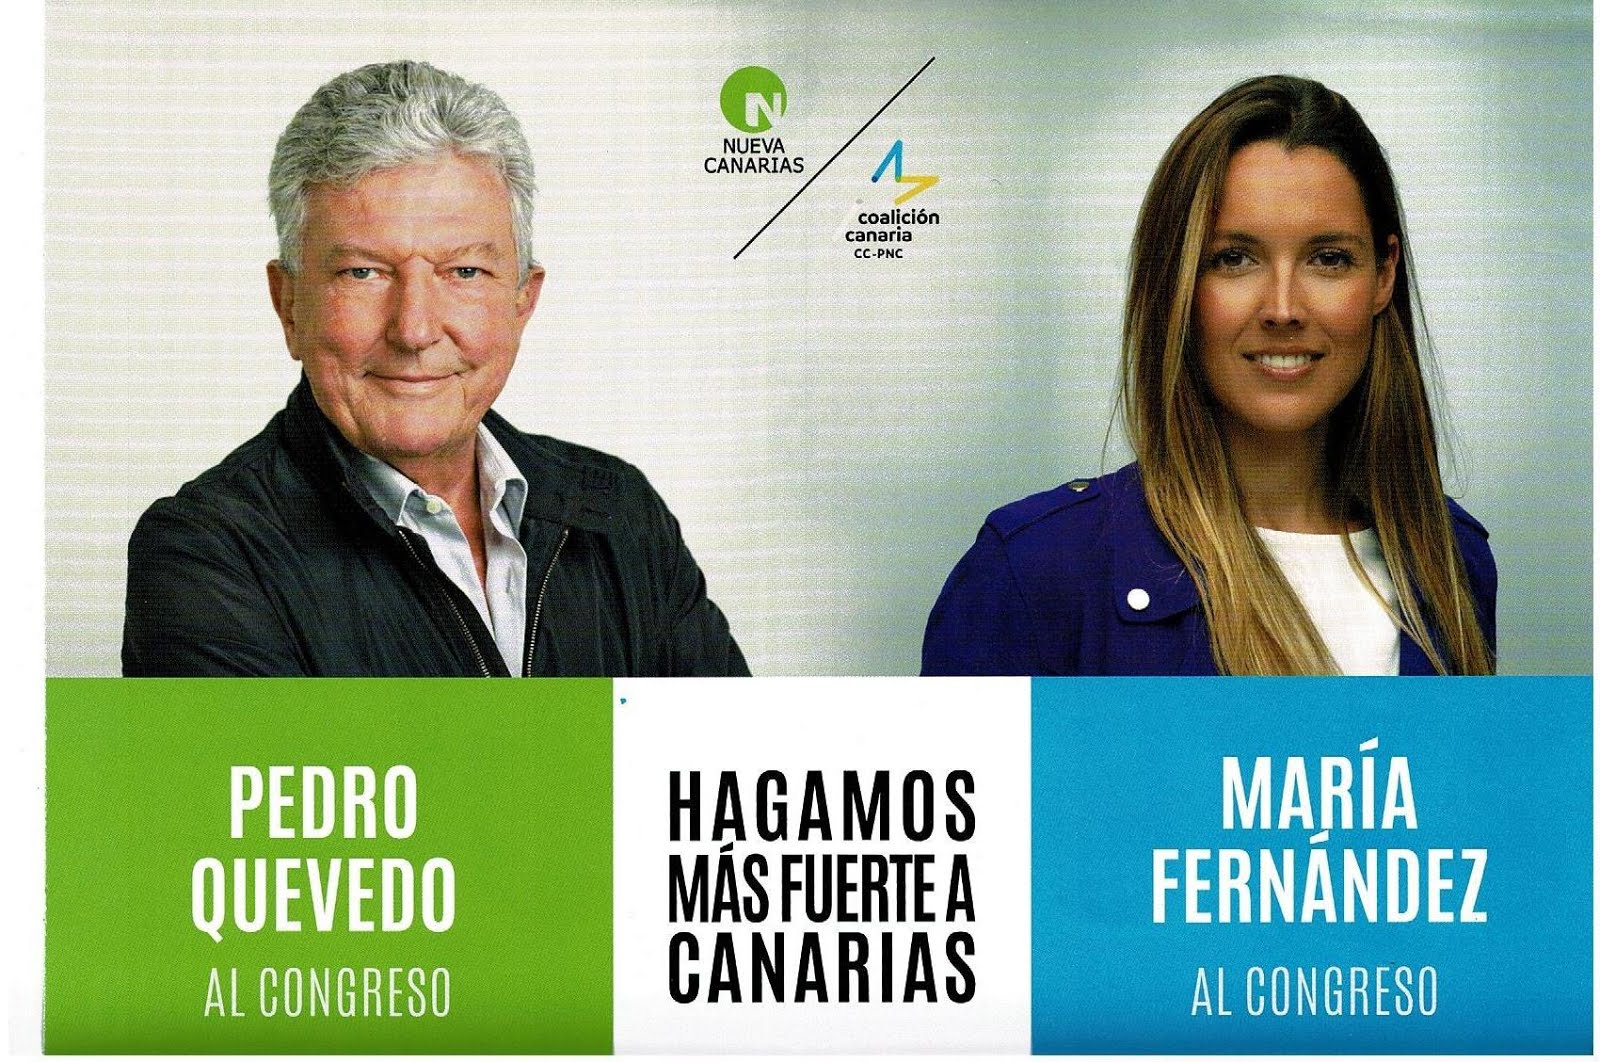 Pedro Quevedo Iturbe de Nueva Canarias será Diputado Canario en la próxima legislatura del Congreso